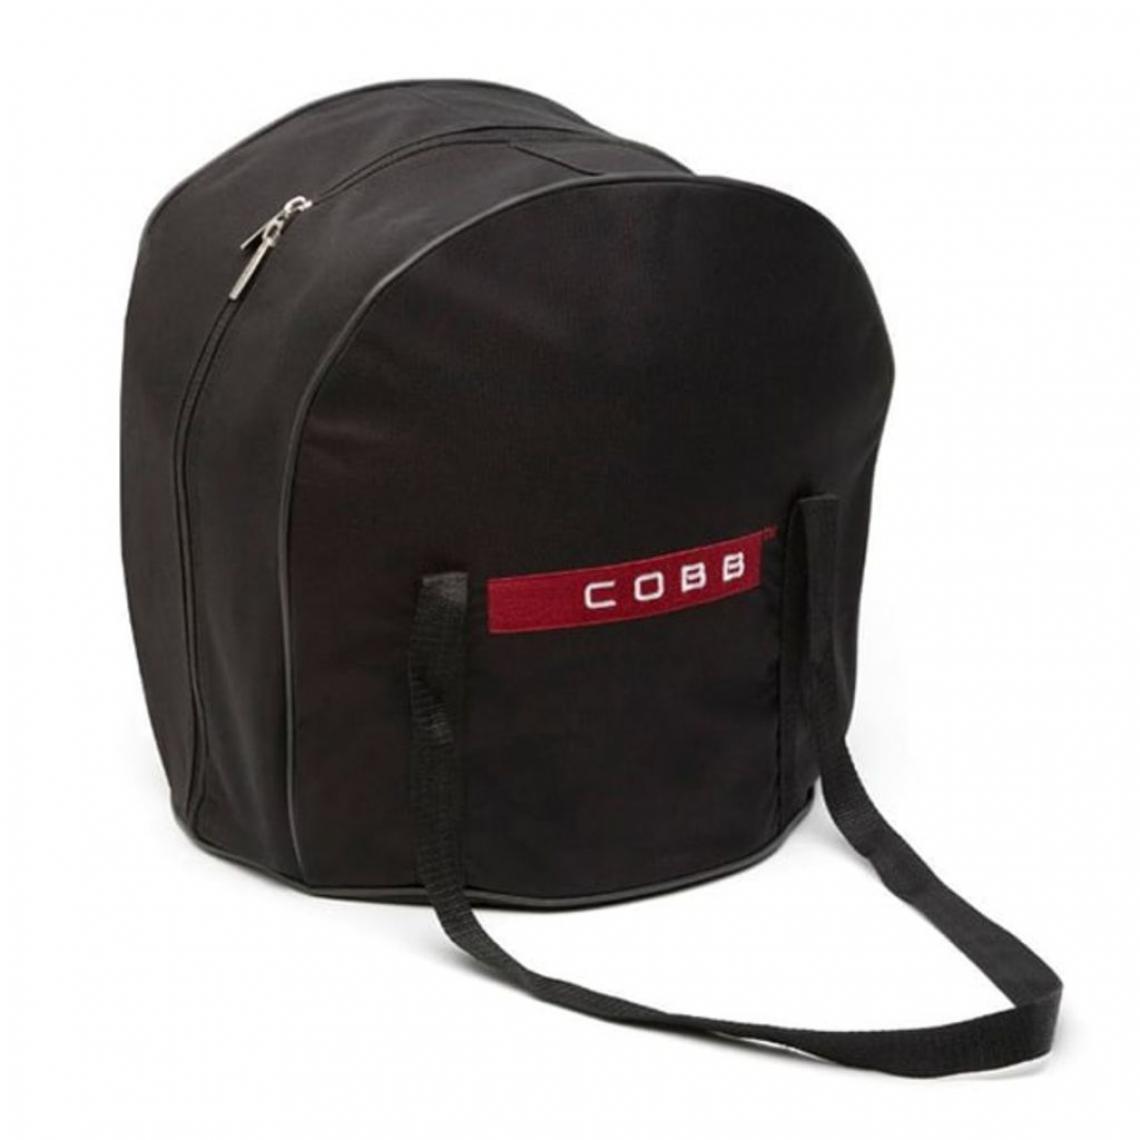 Cobb - COBB Sac de transport Premier / Pro / Compact Noir - Accessoires barbecue